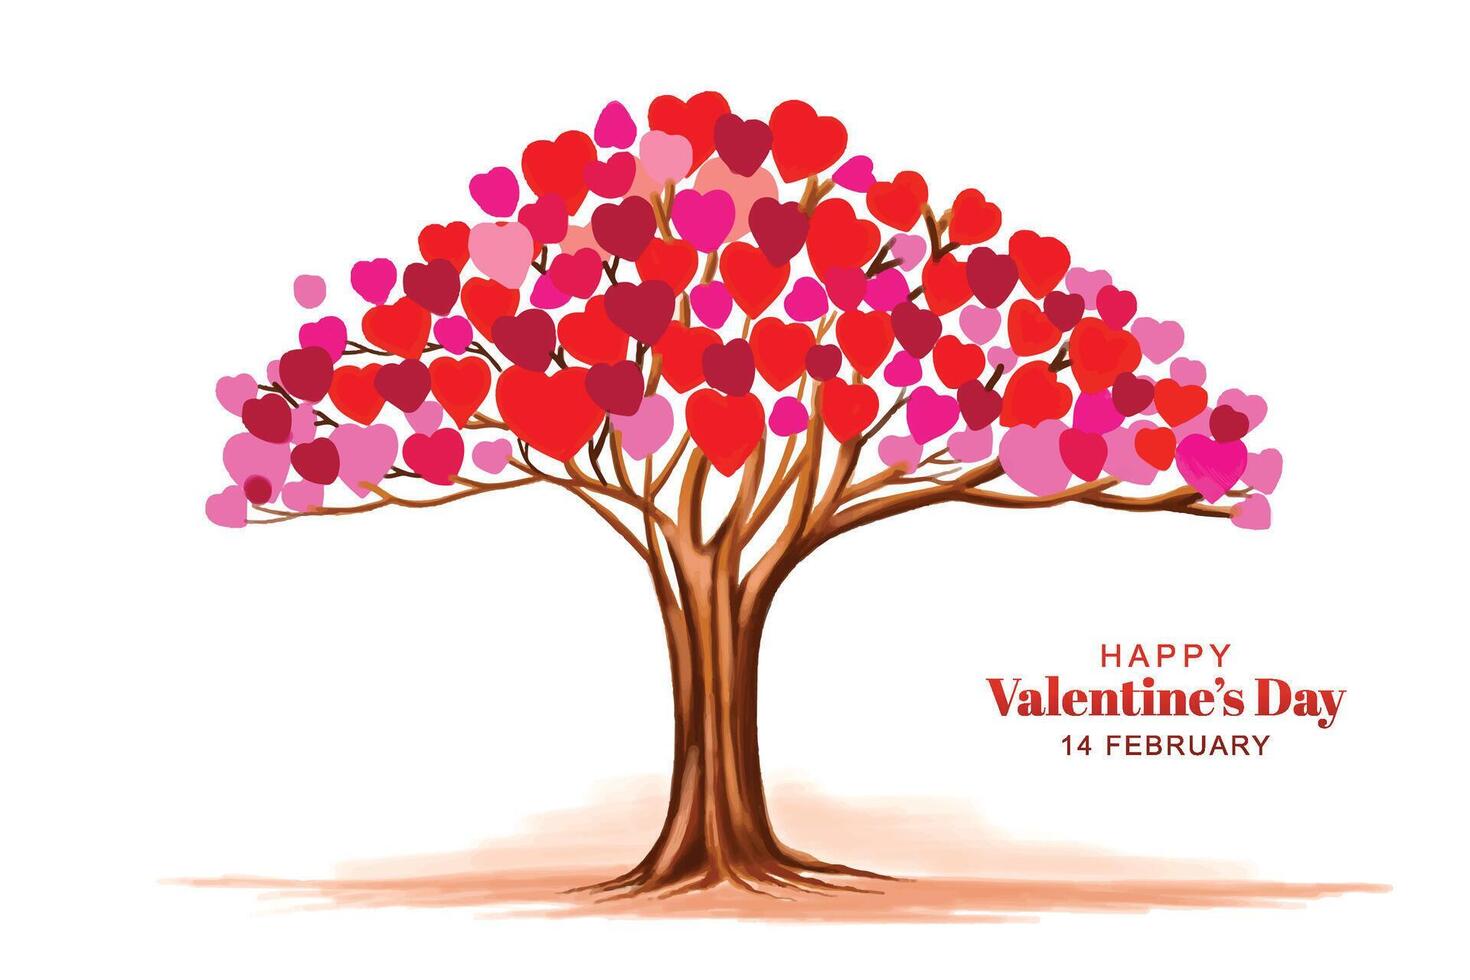 diseño hermoso de la tarjeta del día de san valentín del árbol en forma de corazón vector